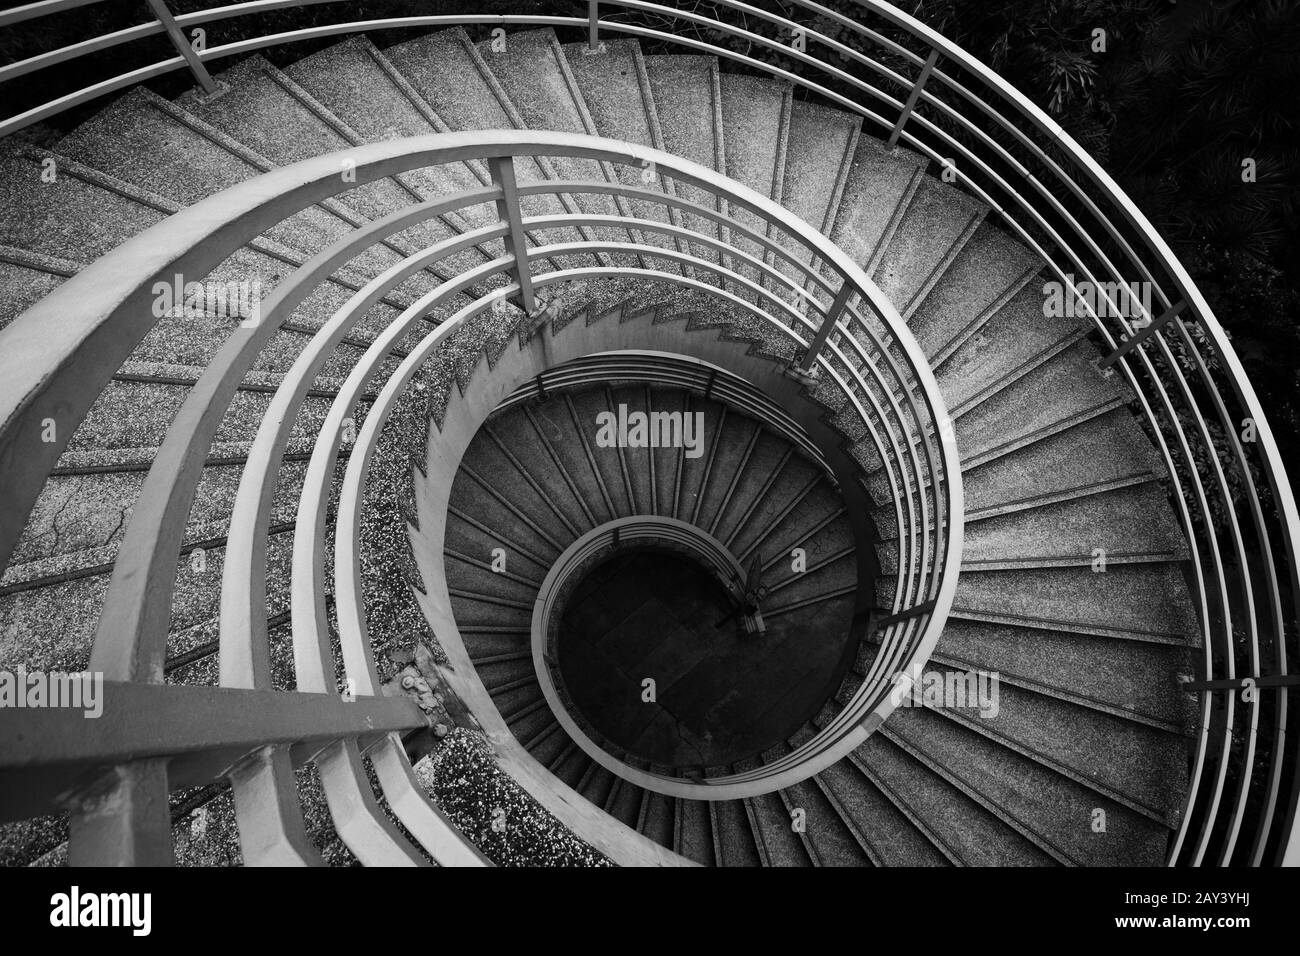 Escaliers en spirale, noir et blanc Banque D'Images